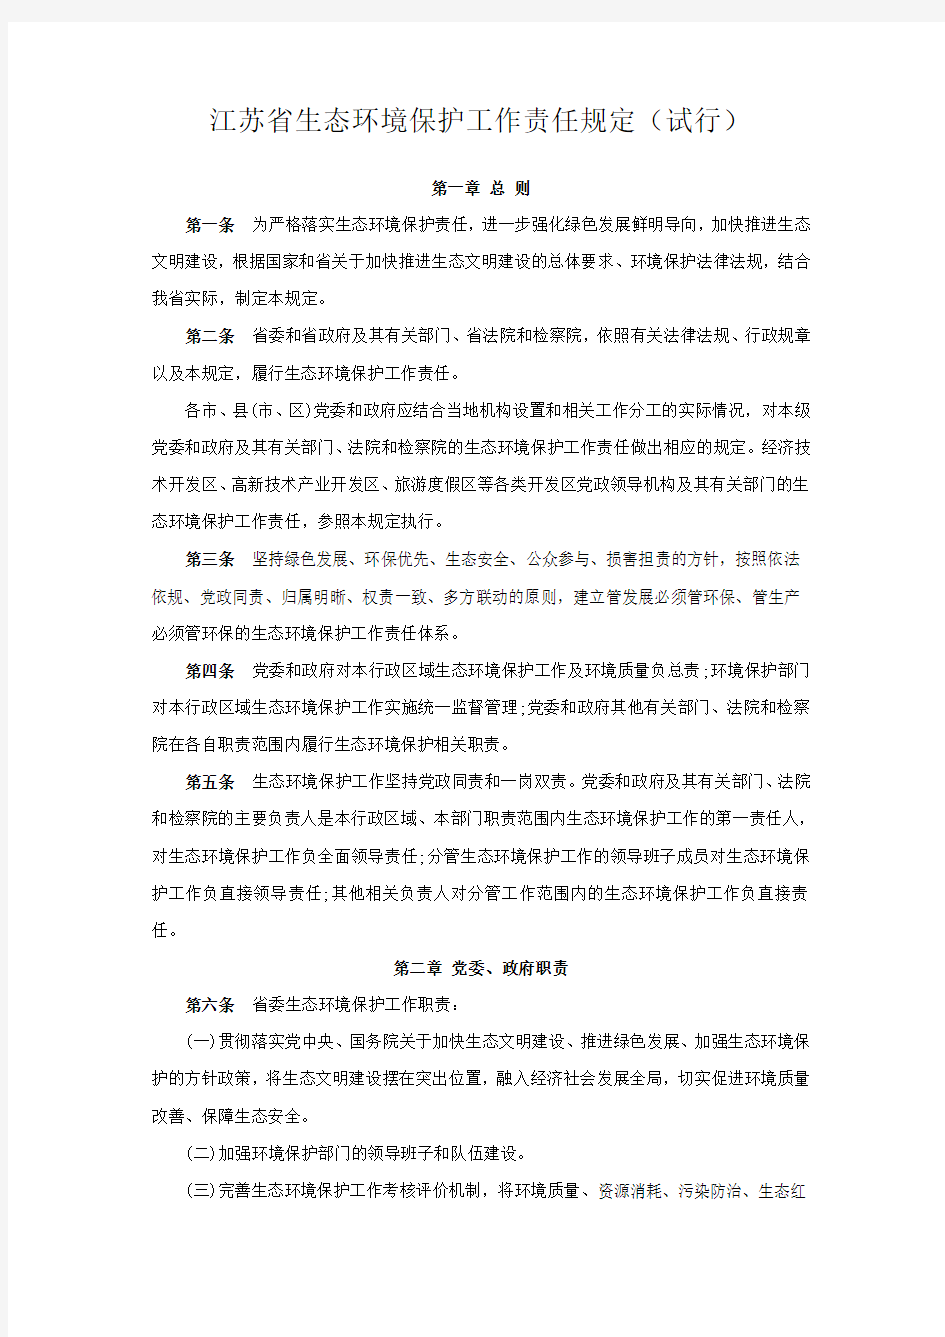 江苏省生态环境保护工作责任规定(试行)